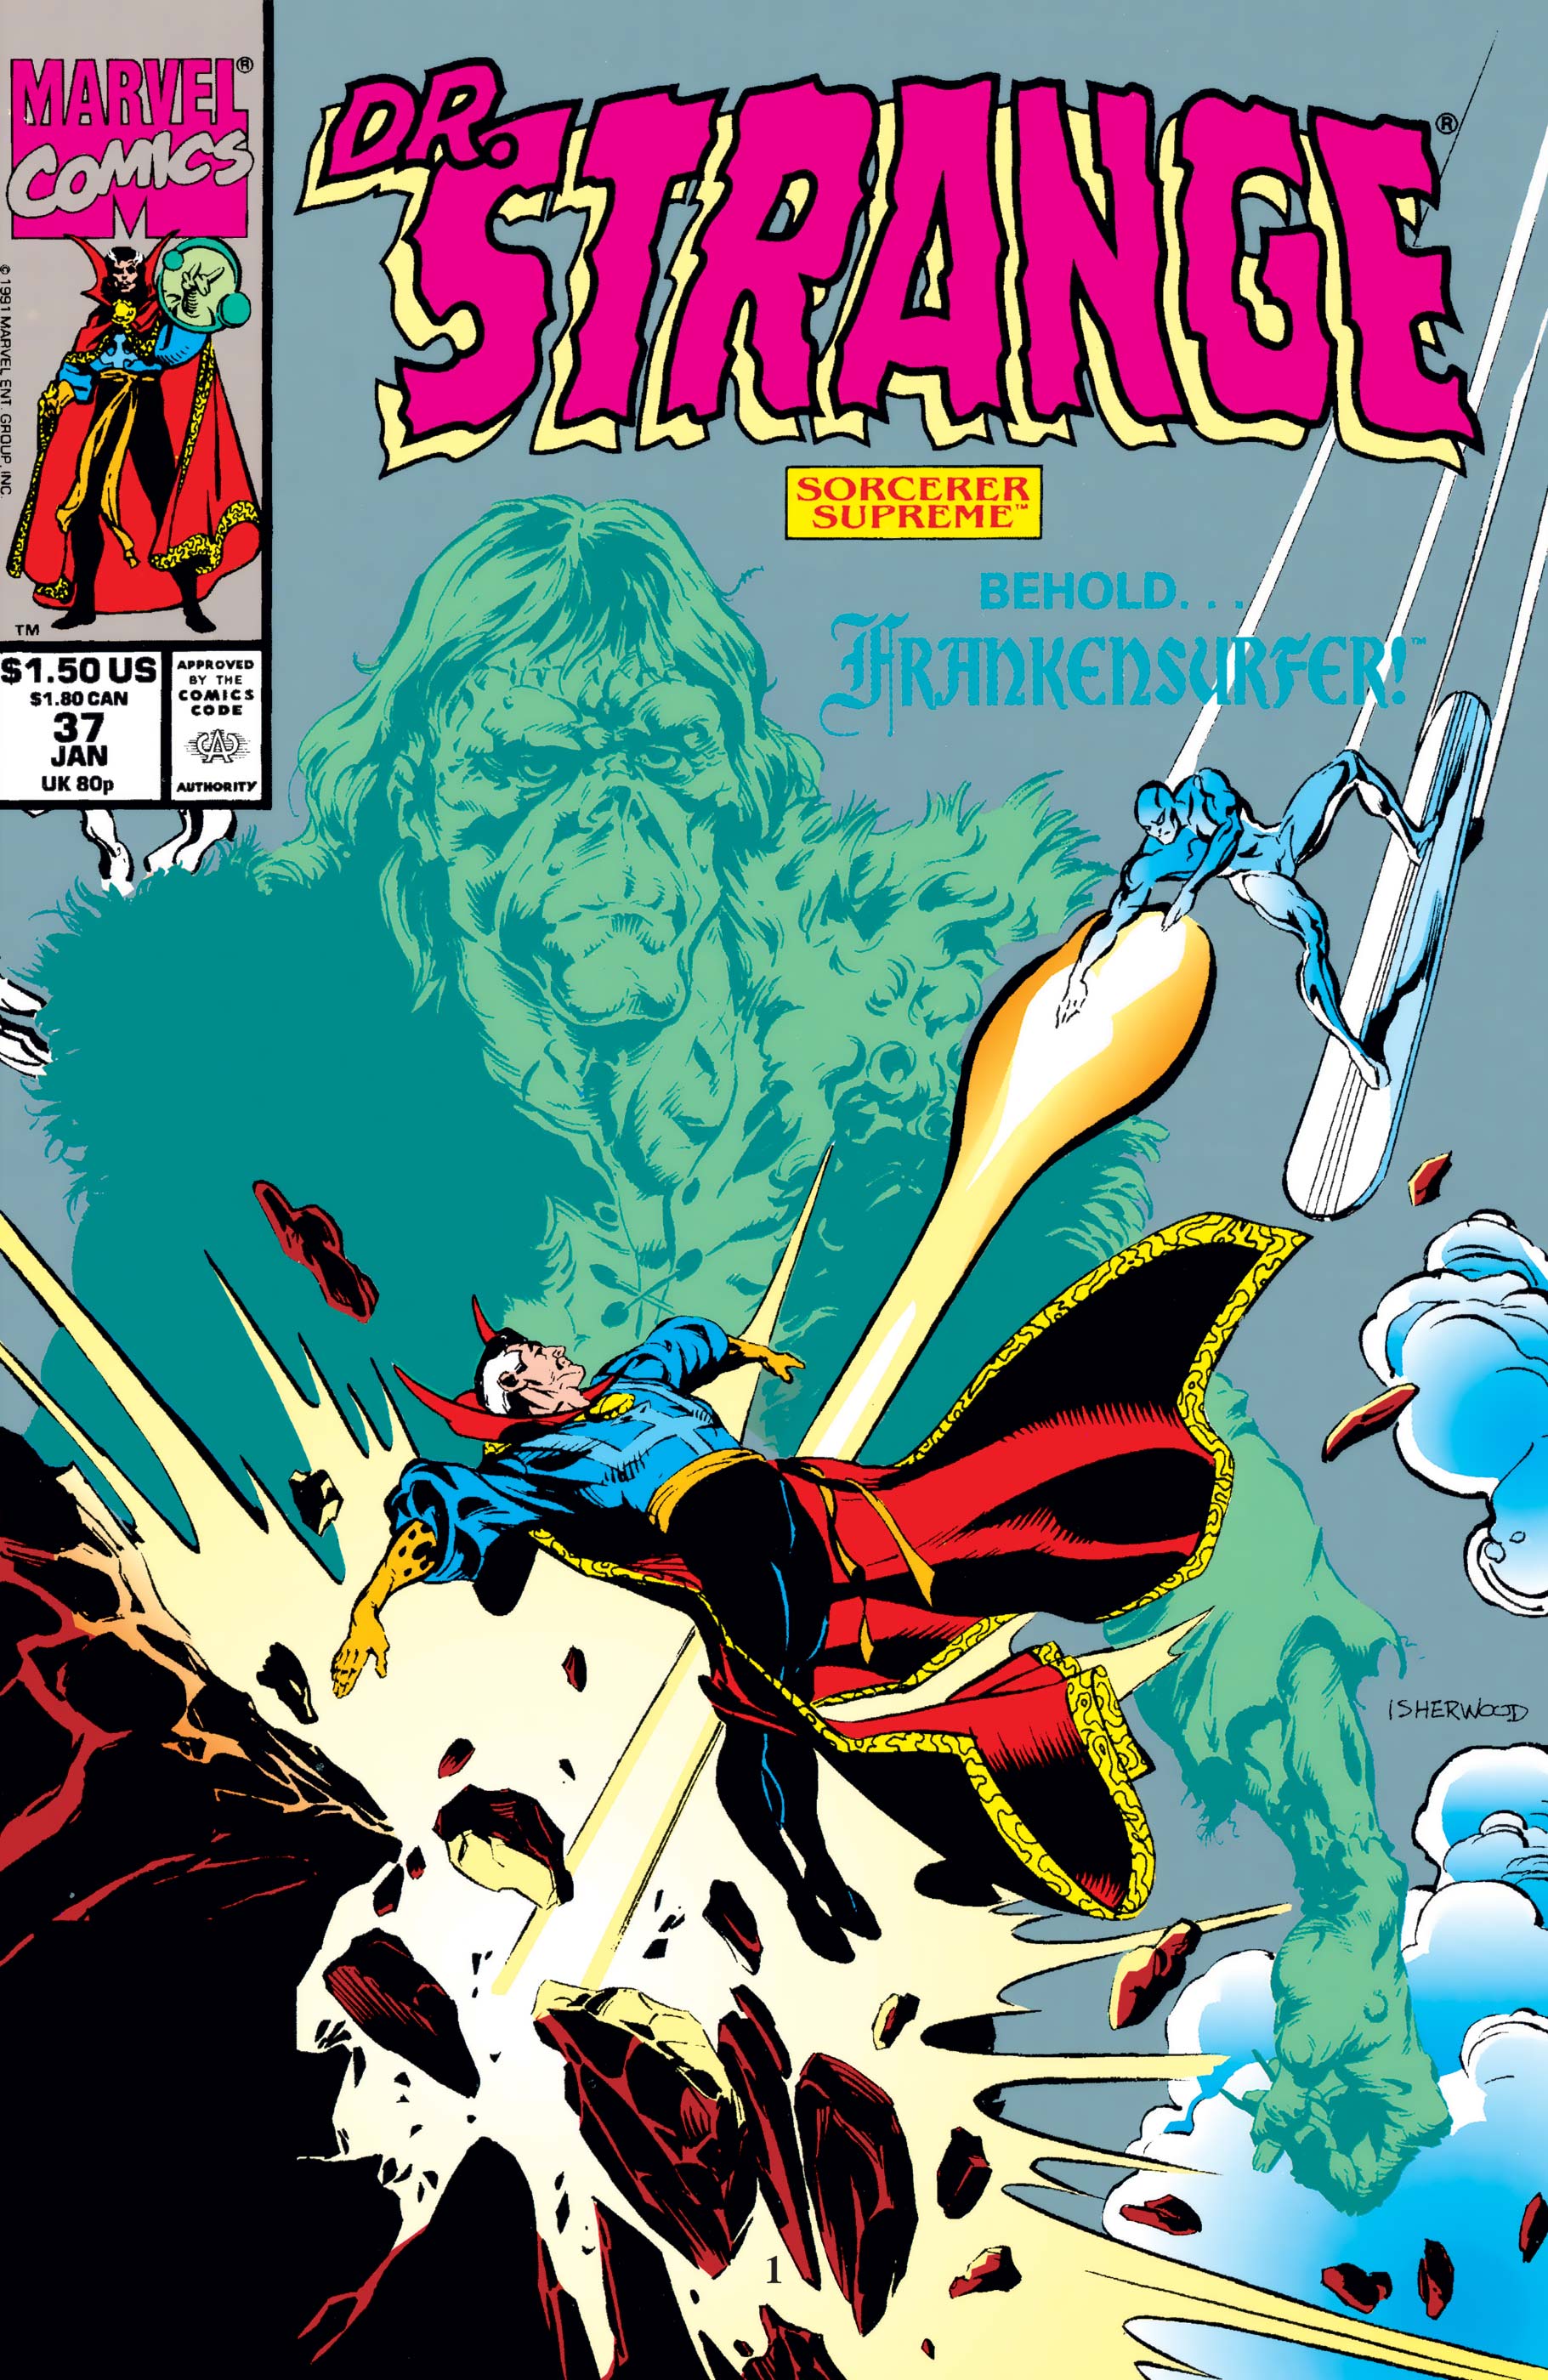 Doctor Strange, Sorcerer Supreme (1988) #37